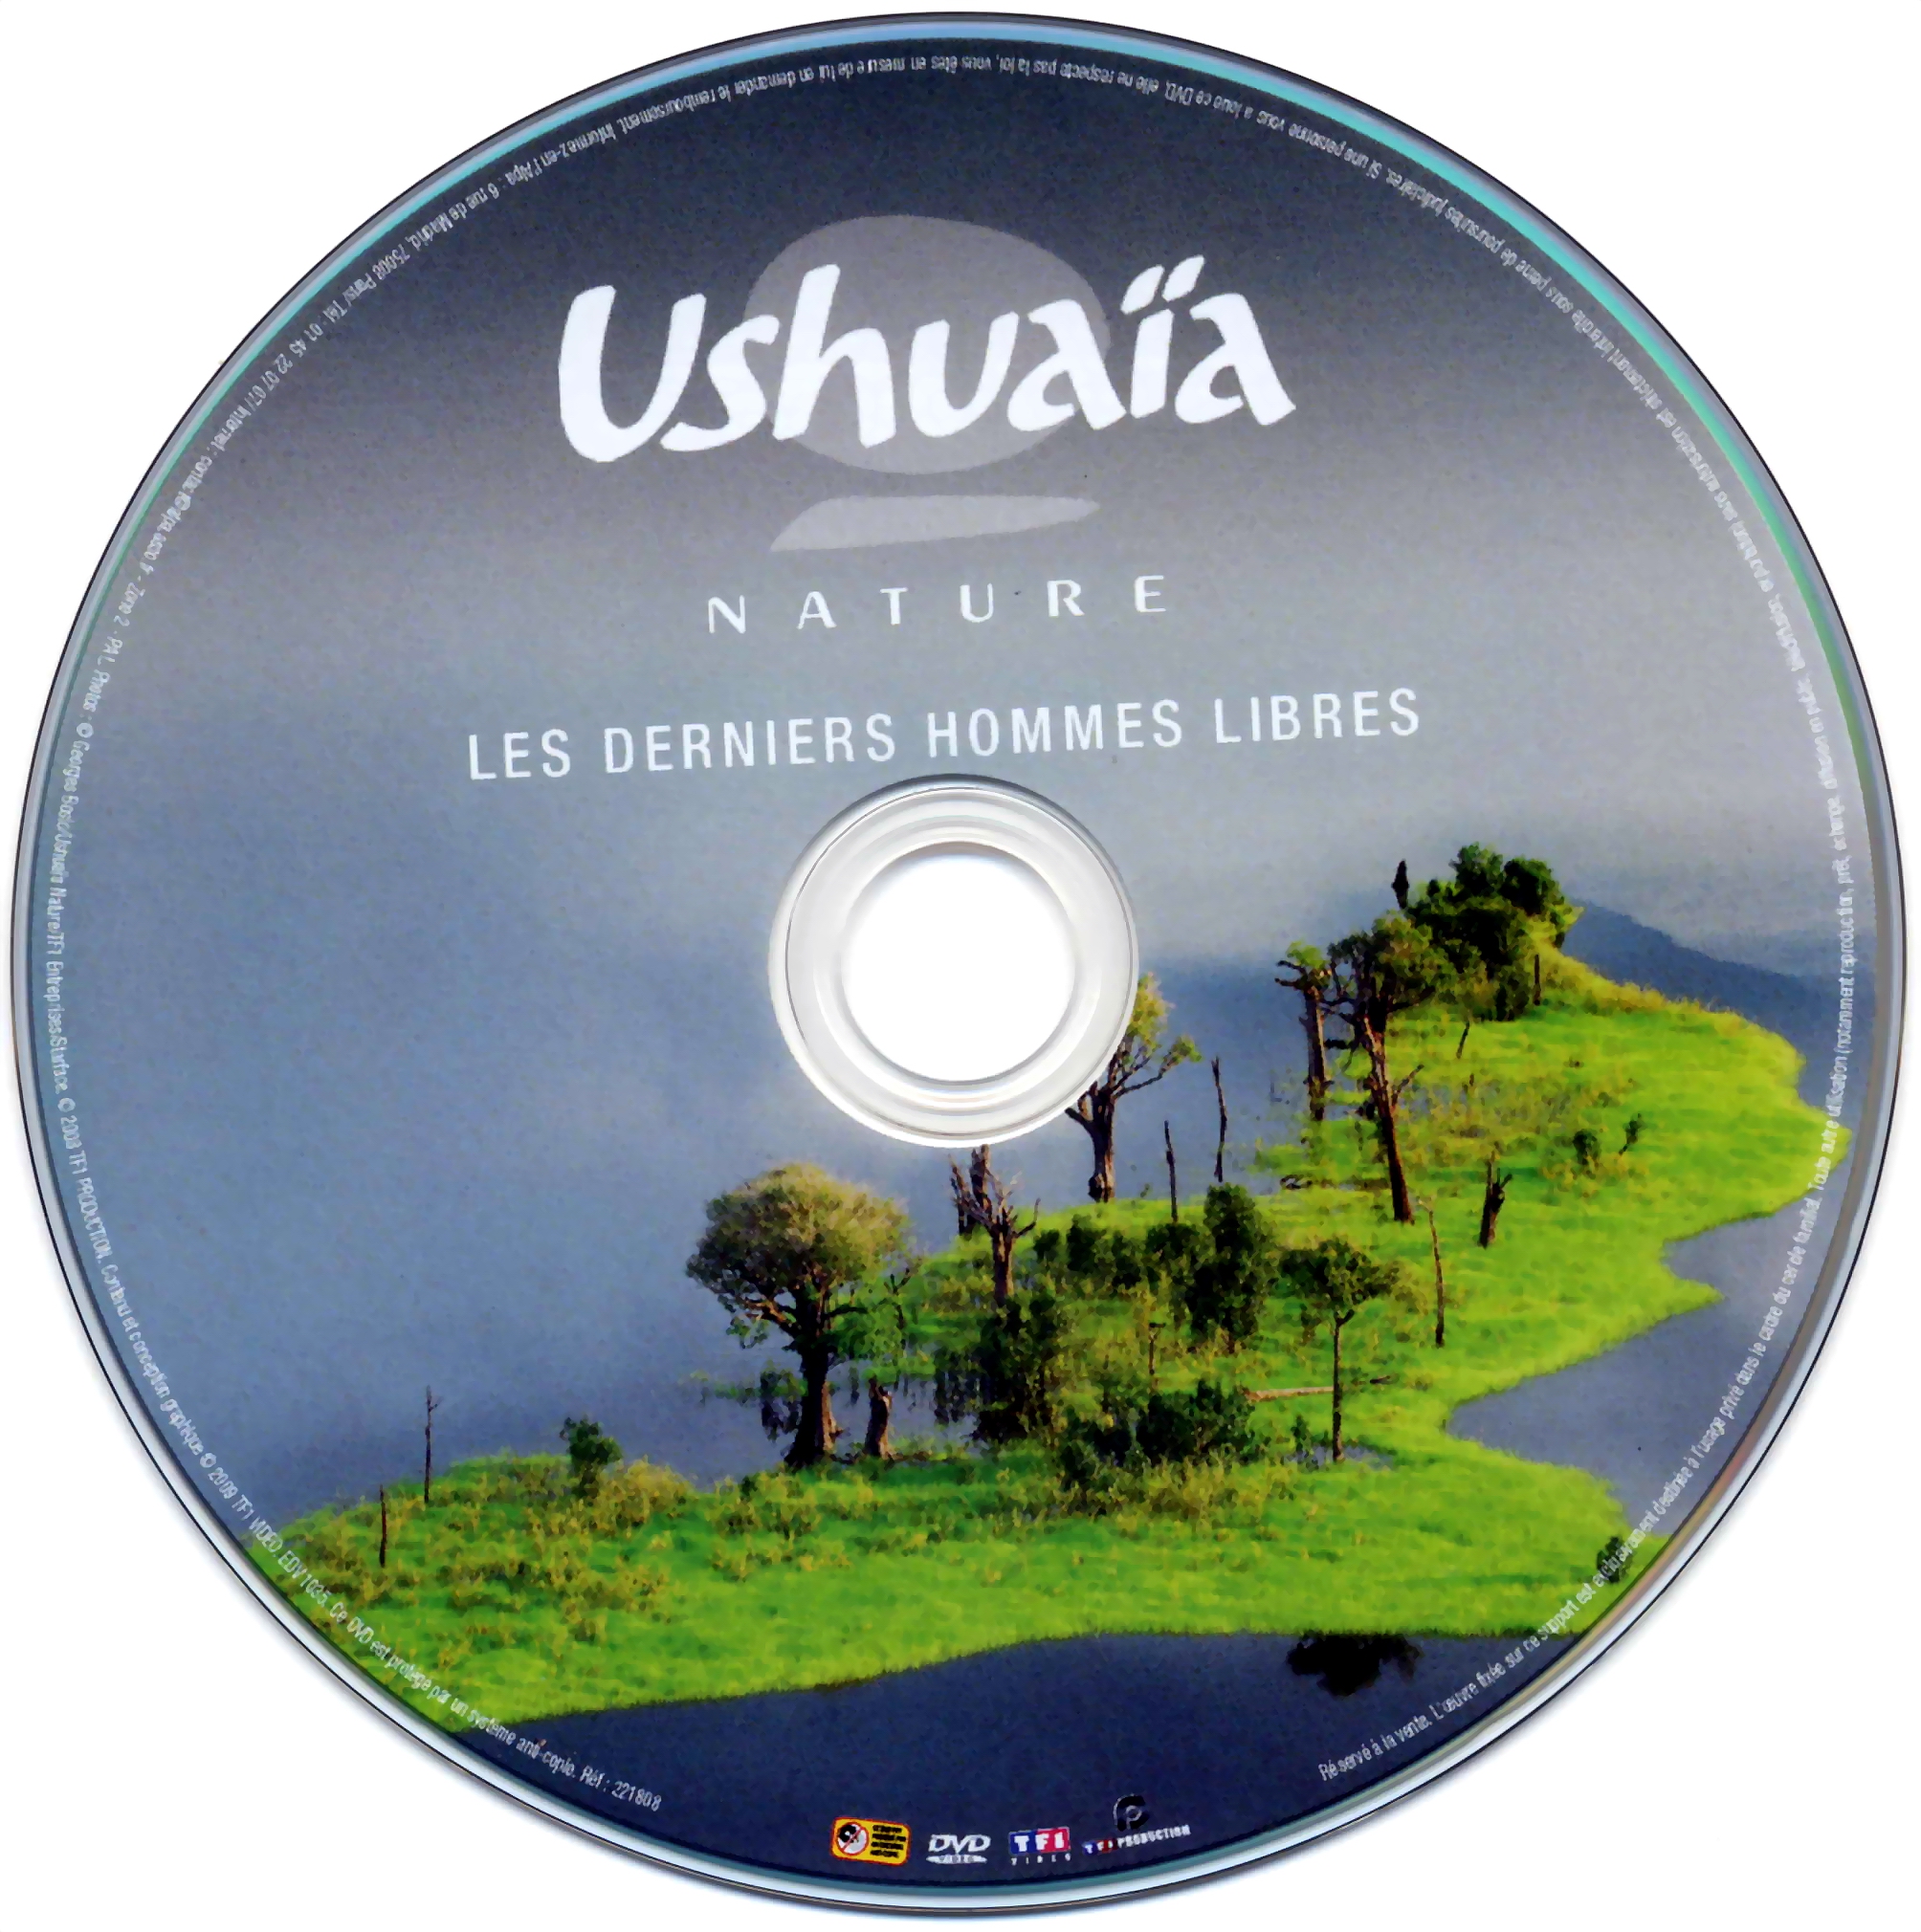 Ushuaia Nature - Les derniers hommes libres